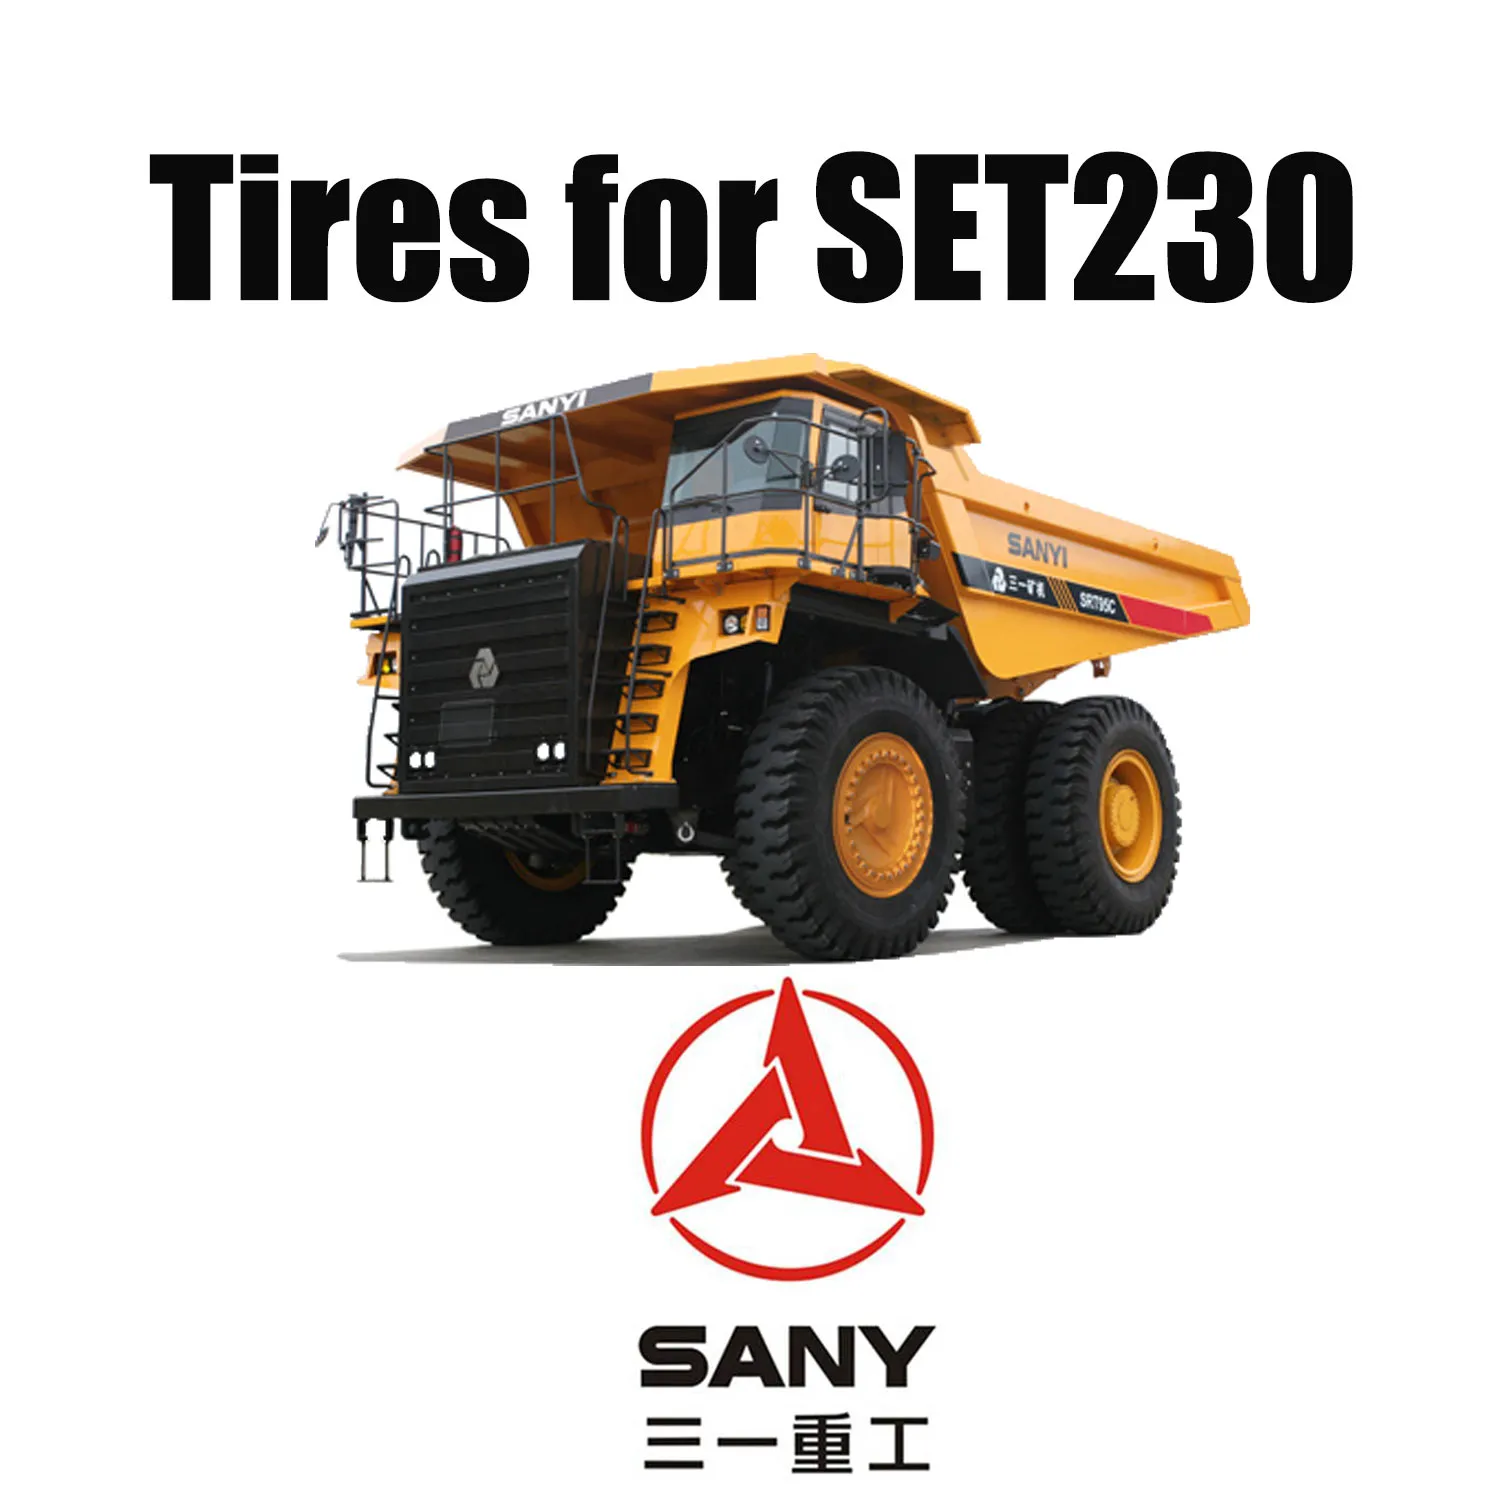 40.00R57 إطارات OTR شعاعية مع مداس ممتاز مقاوم للقطع لشاحنة التعدين SANY SET230